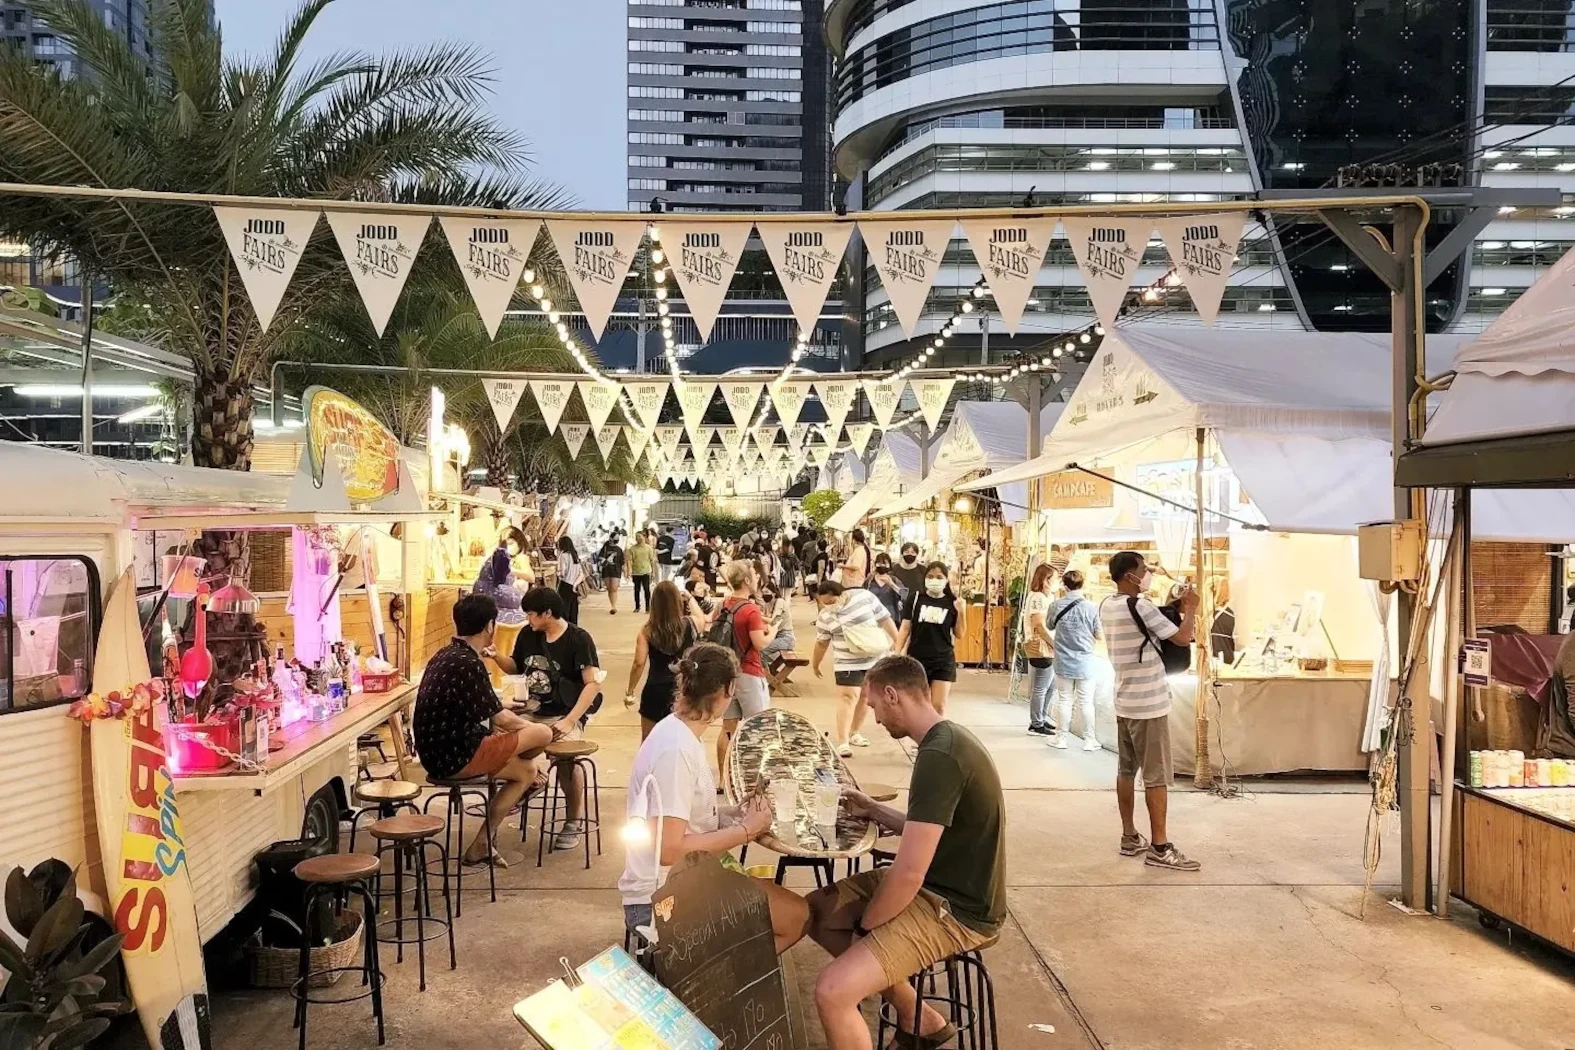 the beautiful night market Jodd Fairs in Bangkok with people in date